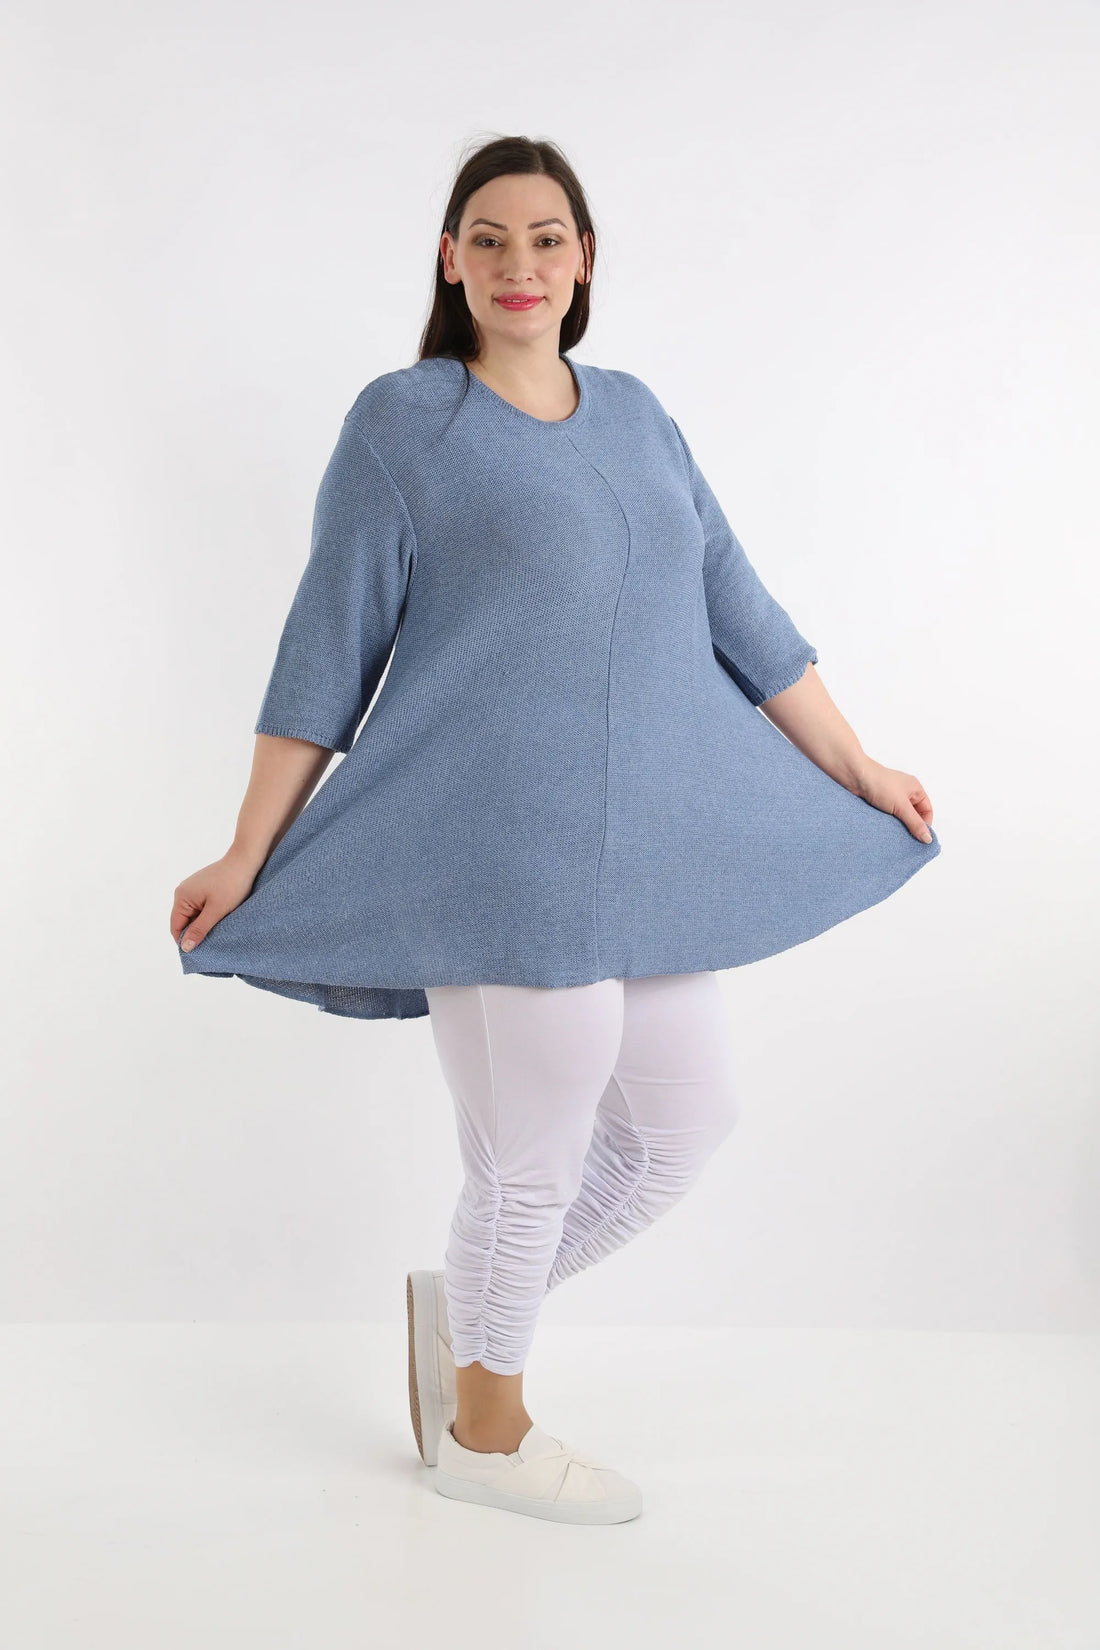 Shirt von AKH Fashion aus Baumwolle in Glocken-Form, 1110.01892, Jeansblau, Ausgefallen